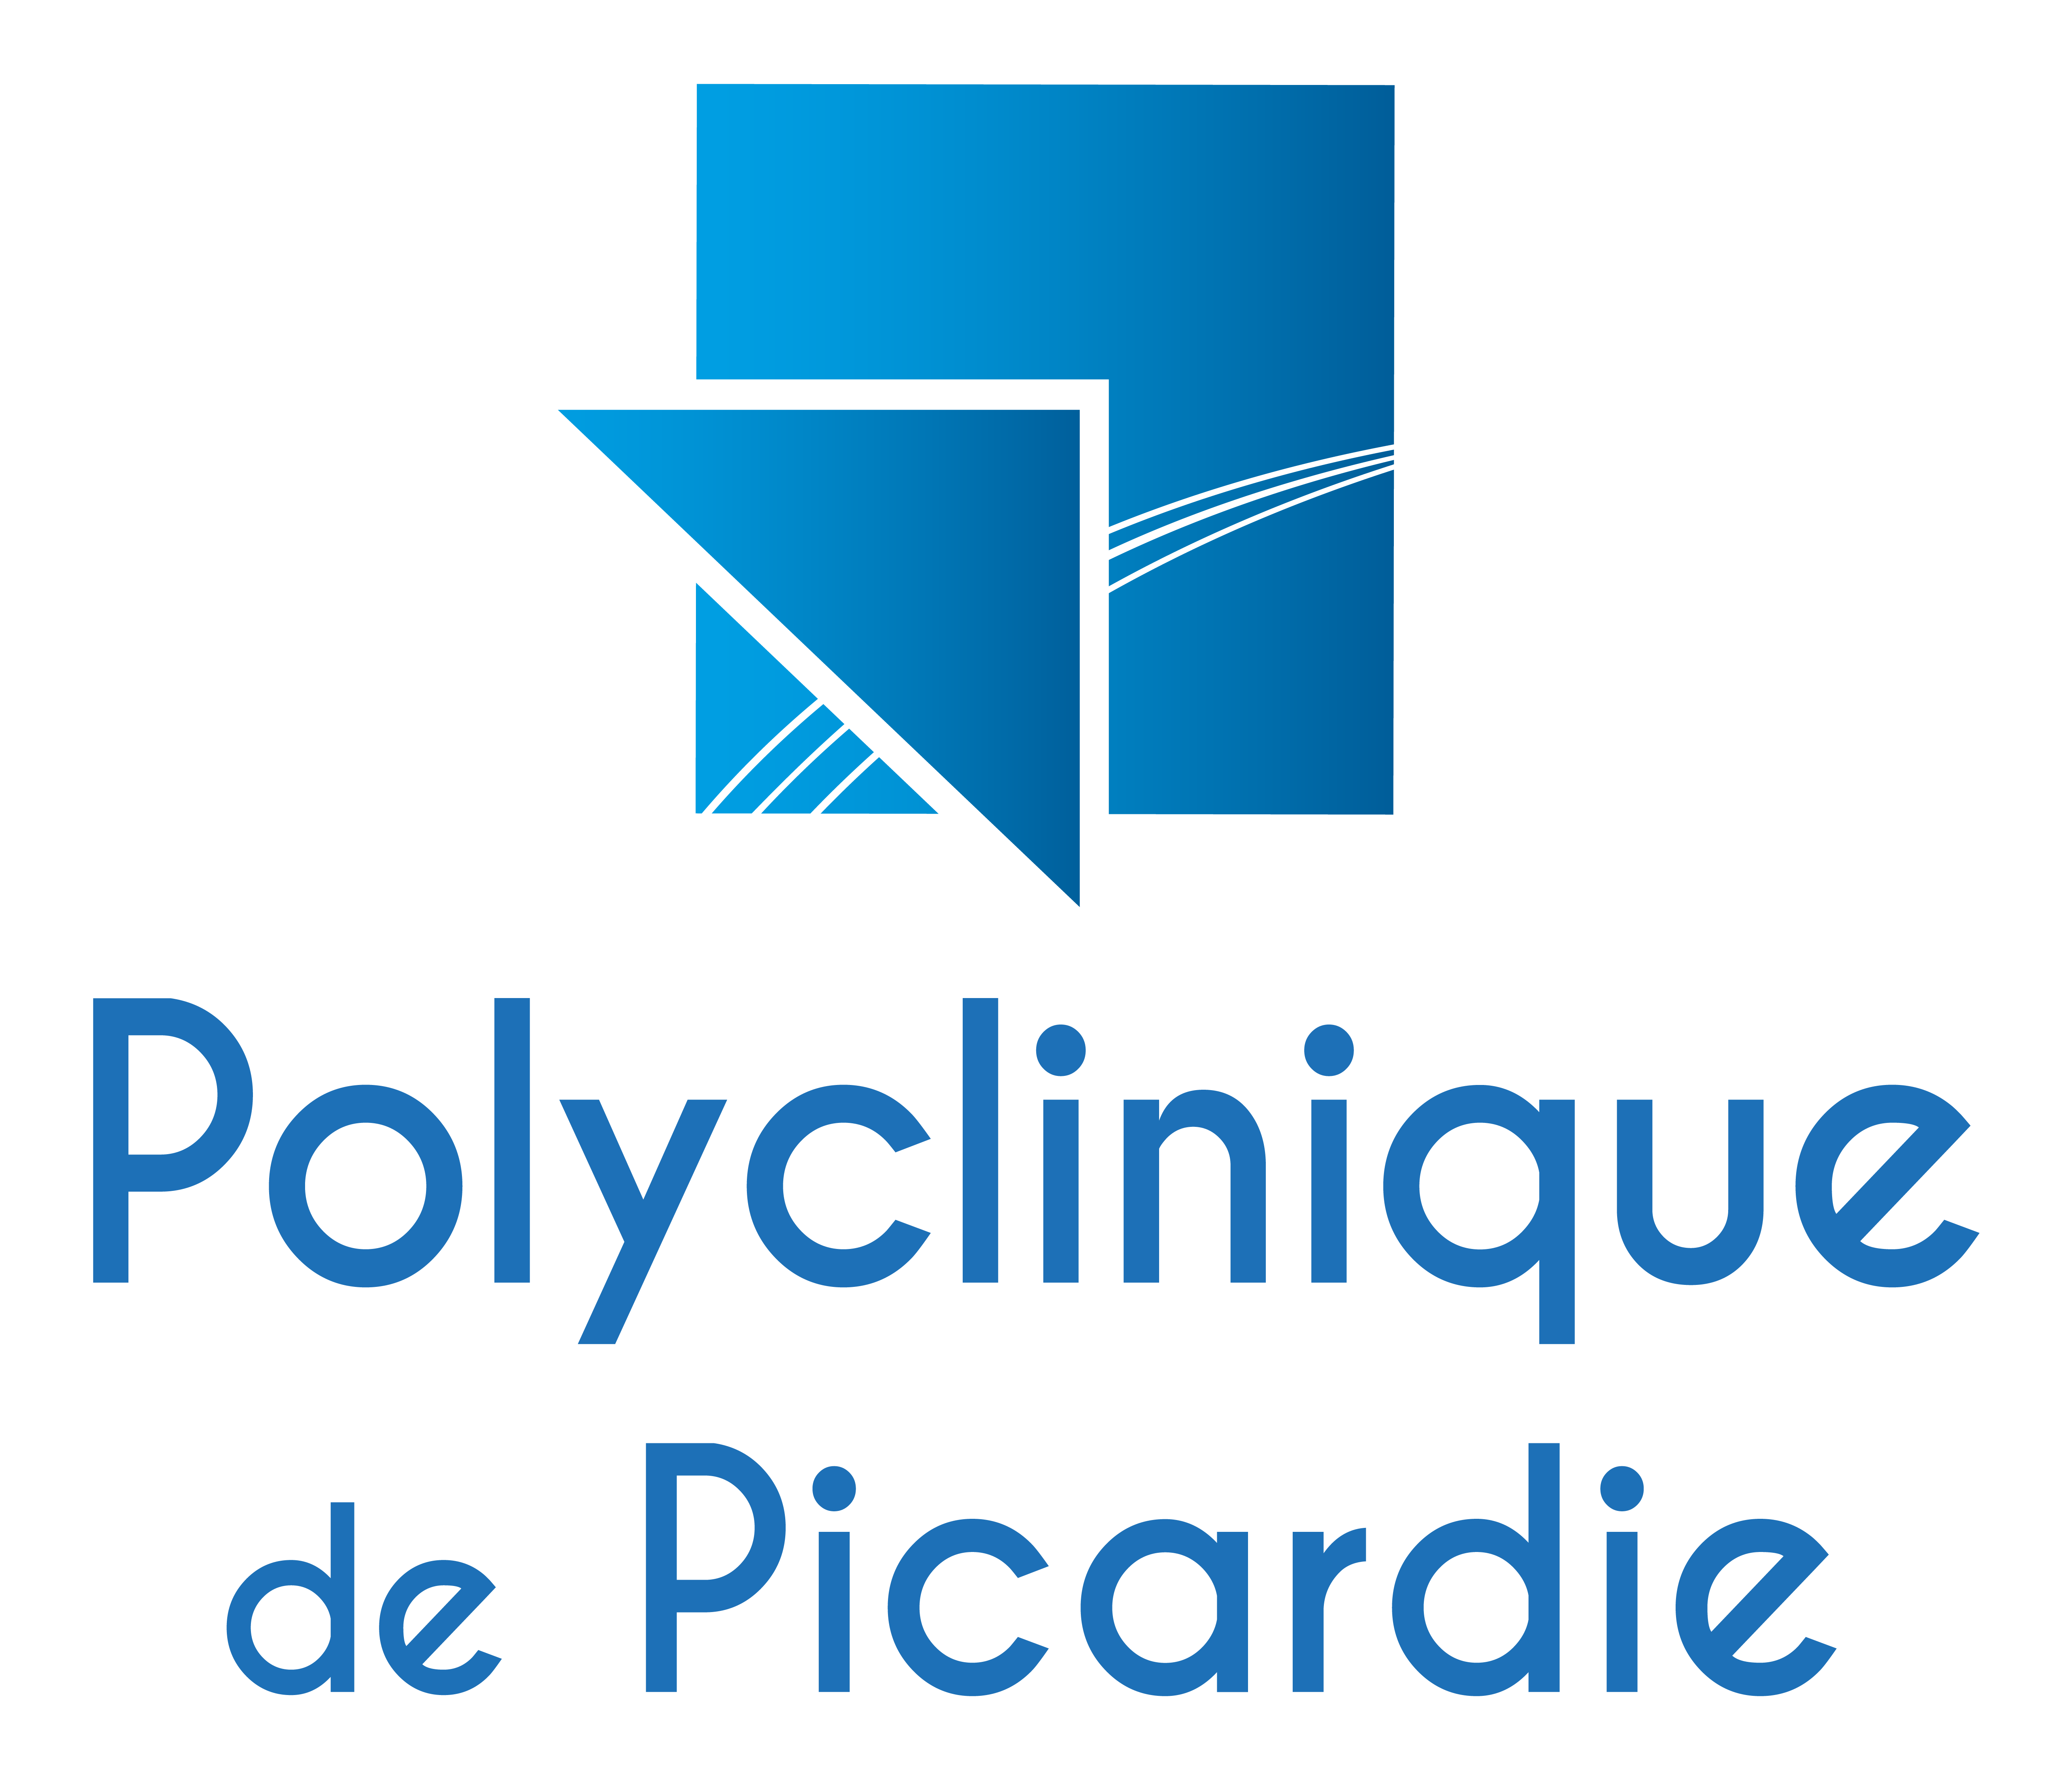 Polyclinique de Picardie | Adopt1Alternant - Offres d